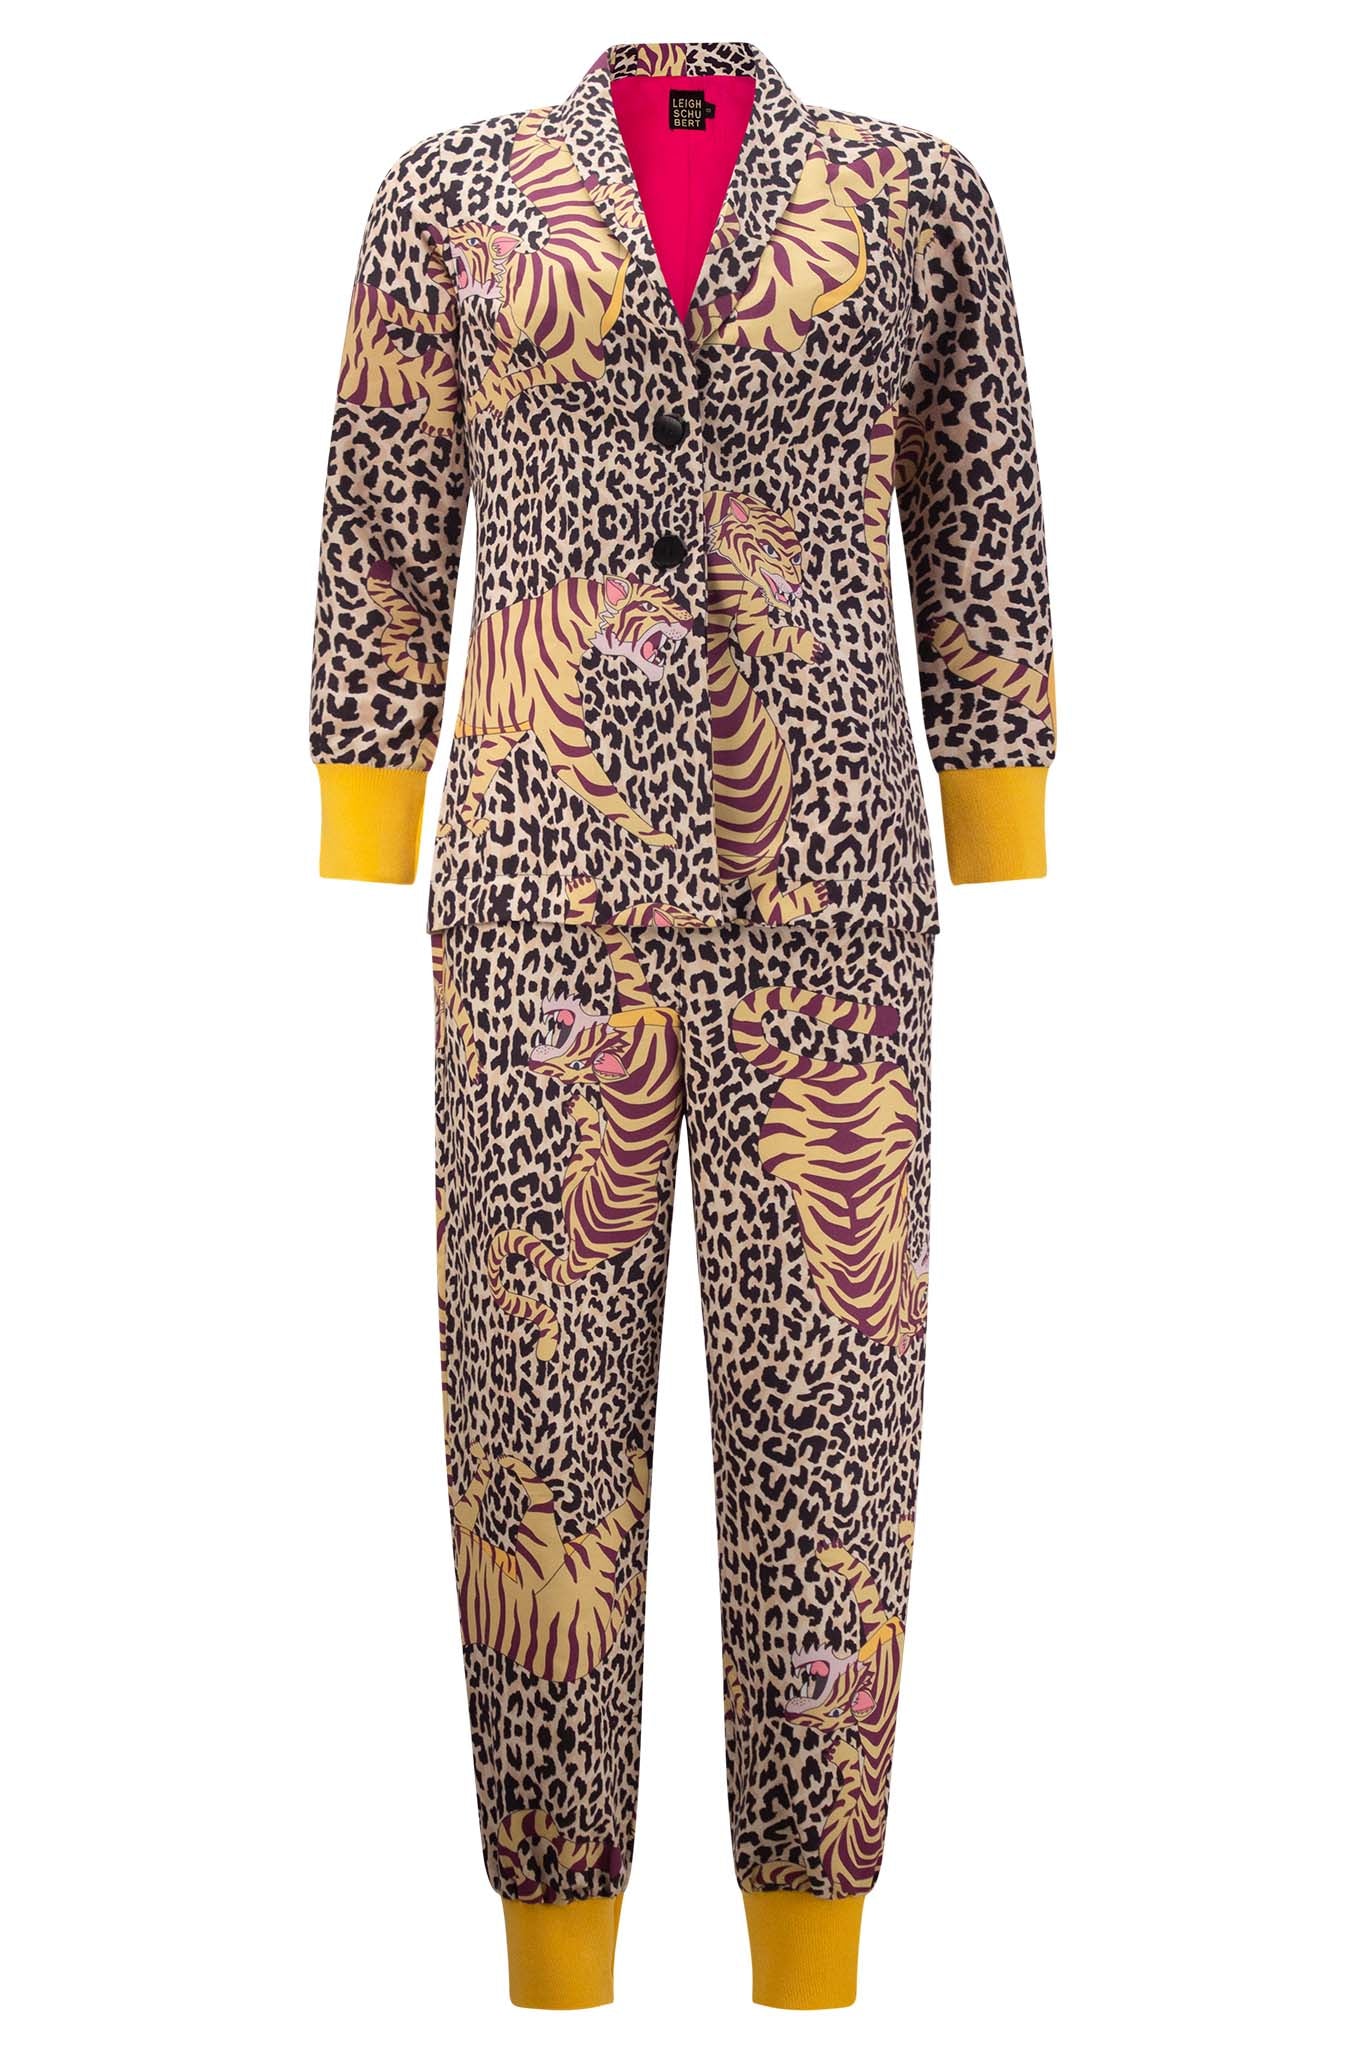 Leigh Schubert BONGLES Pants Leopard Tiger Print.